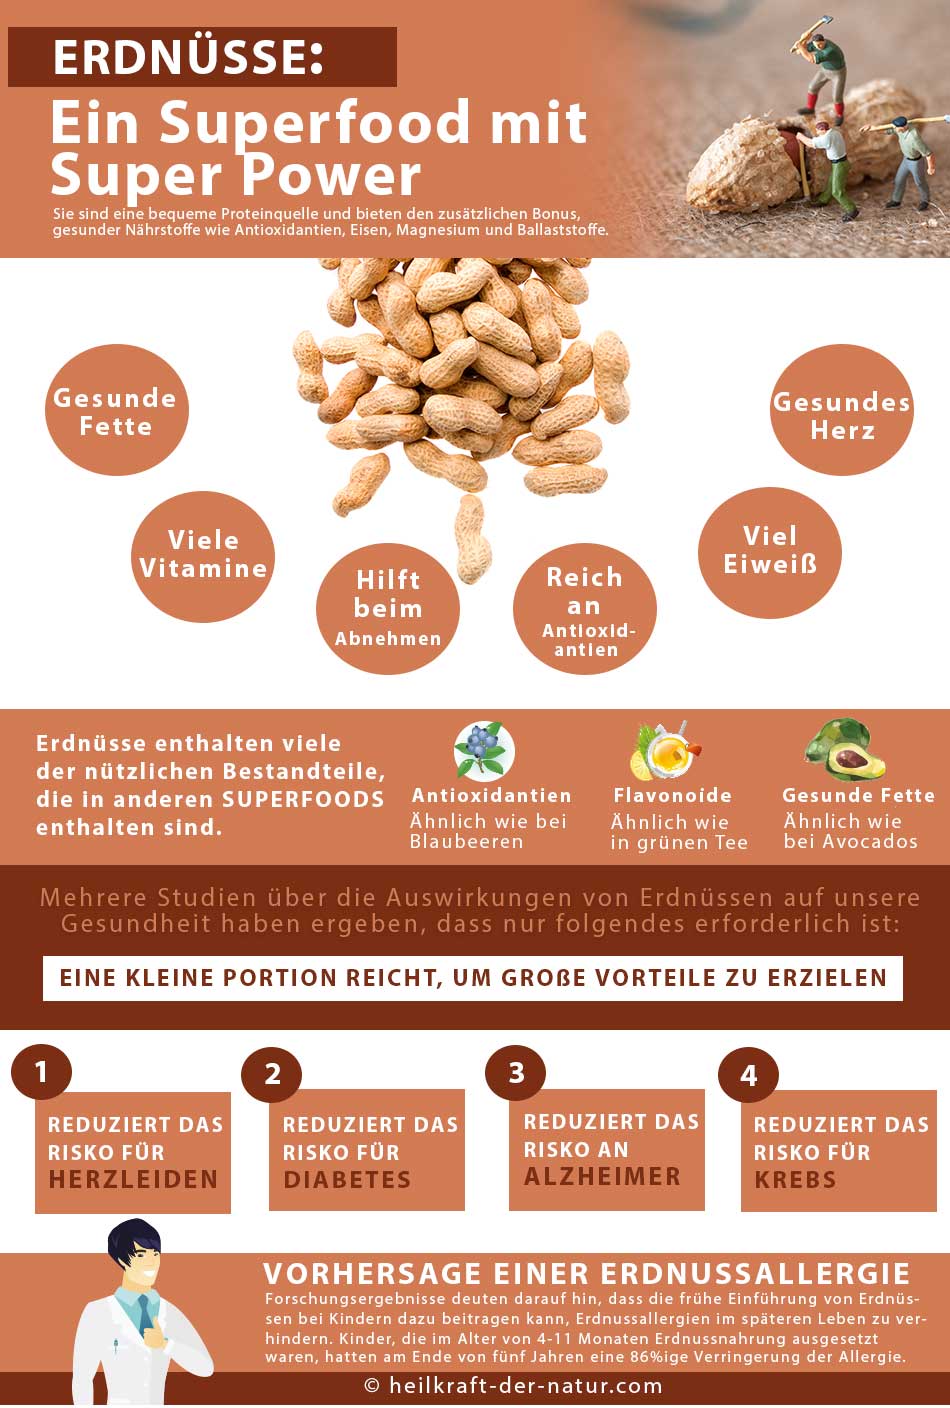 7 Vorteile: Darum sind Erdnüsse so gesund - Heilkraft der Natur